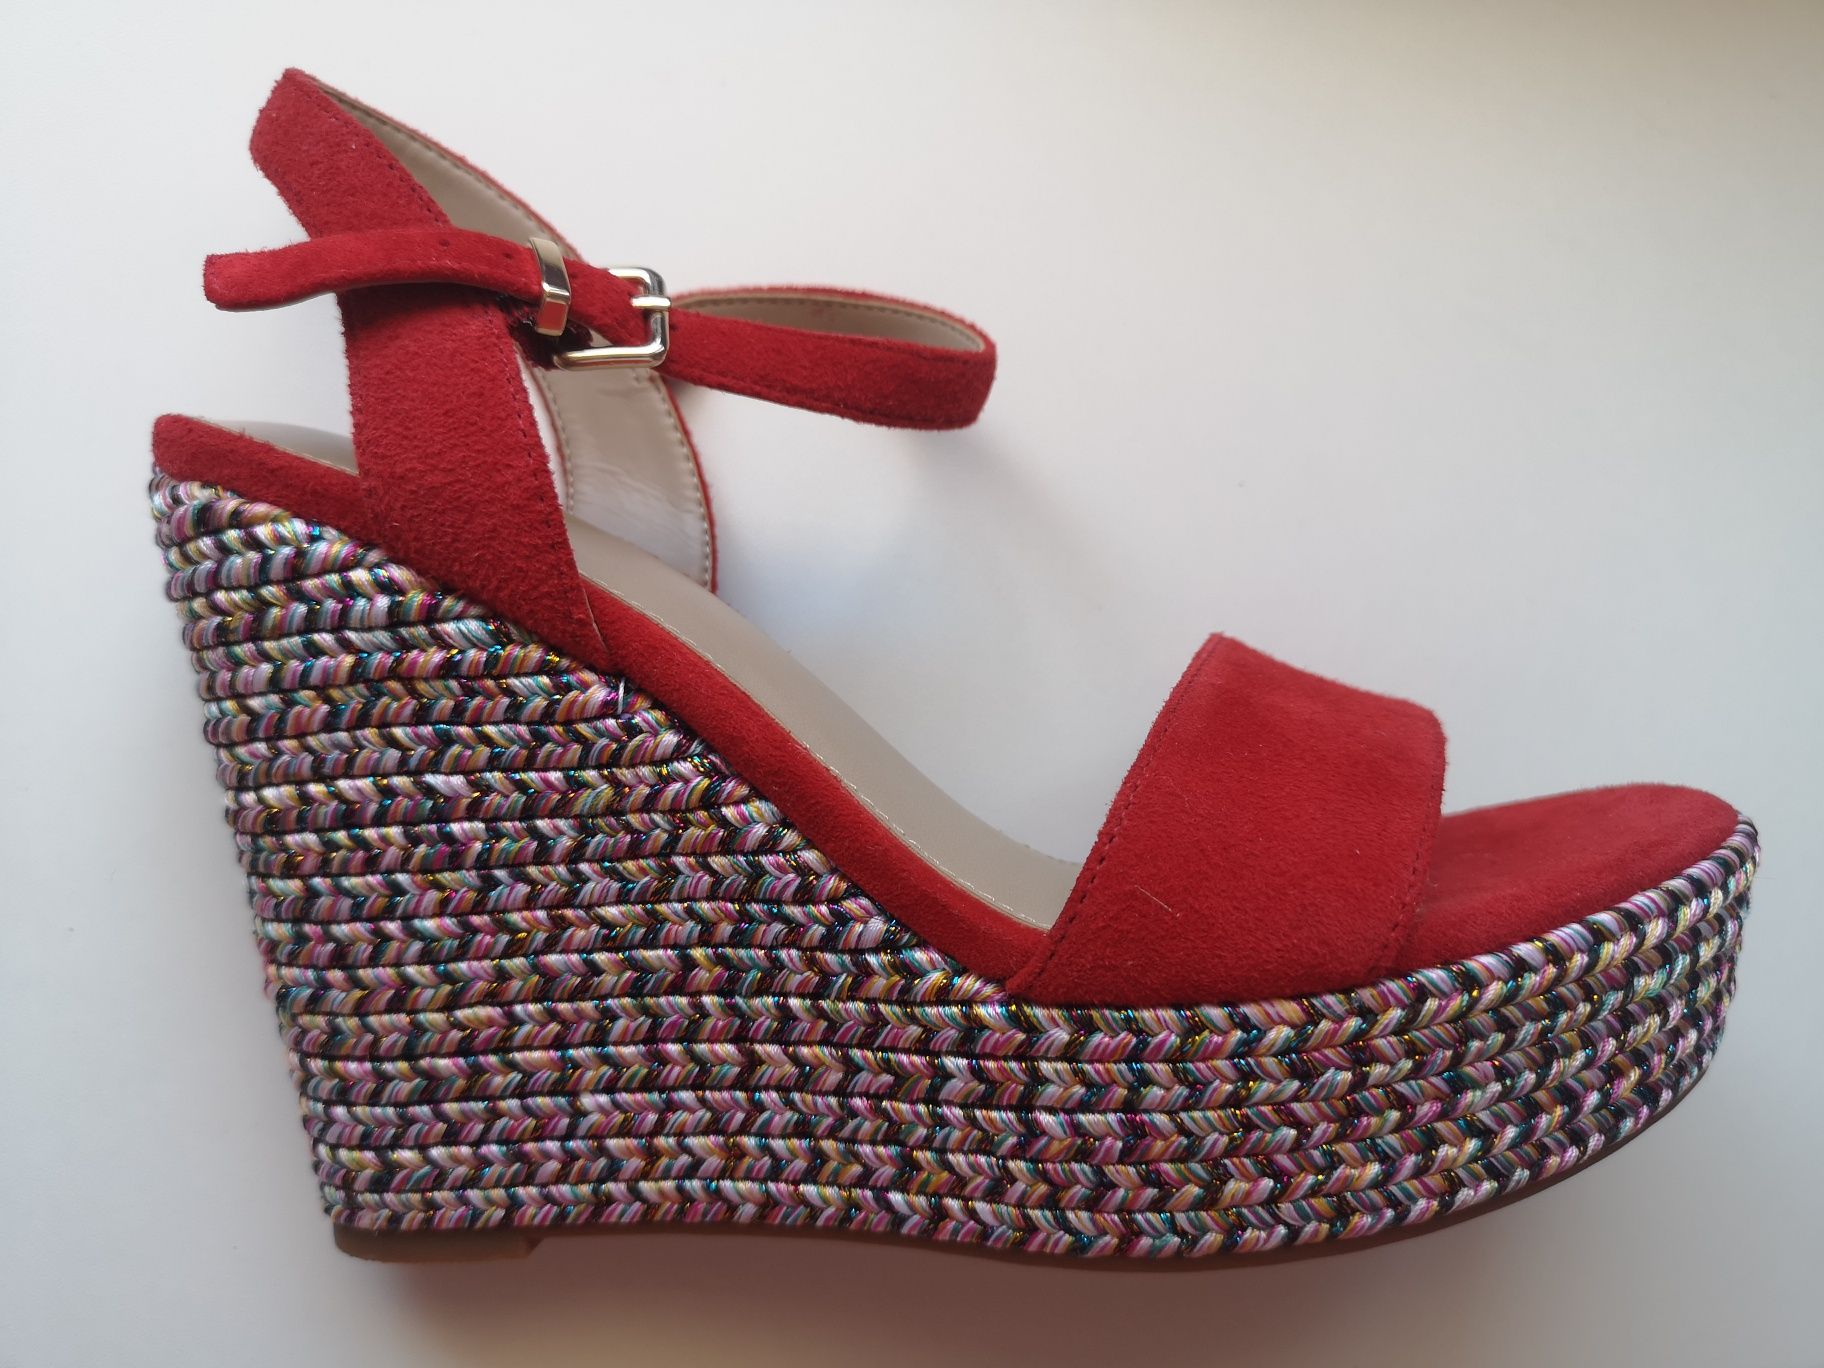 Дамски обувки от естествен велур на цветна платформа Aldo